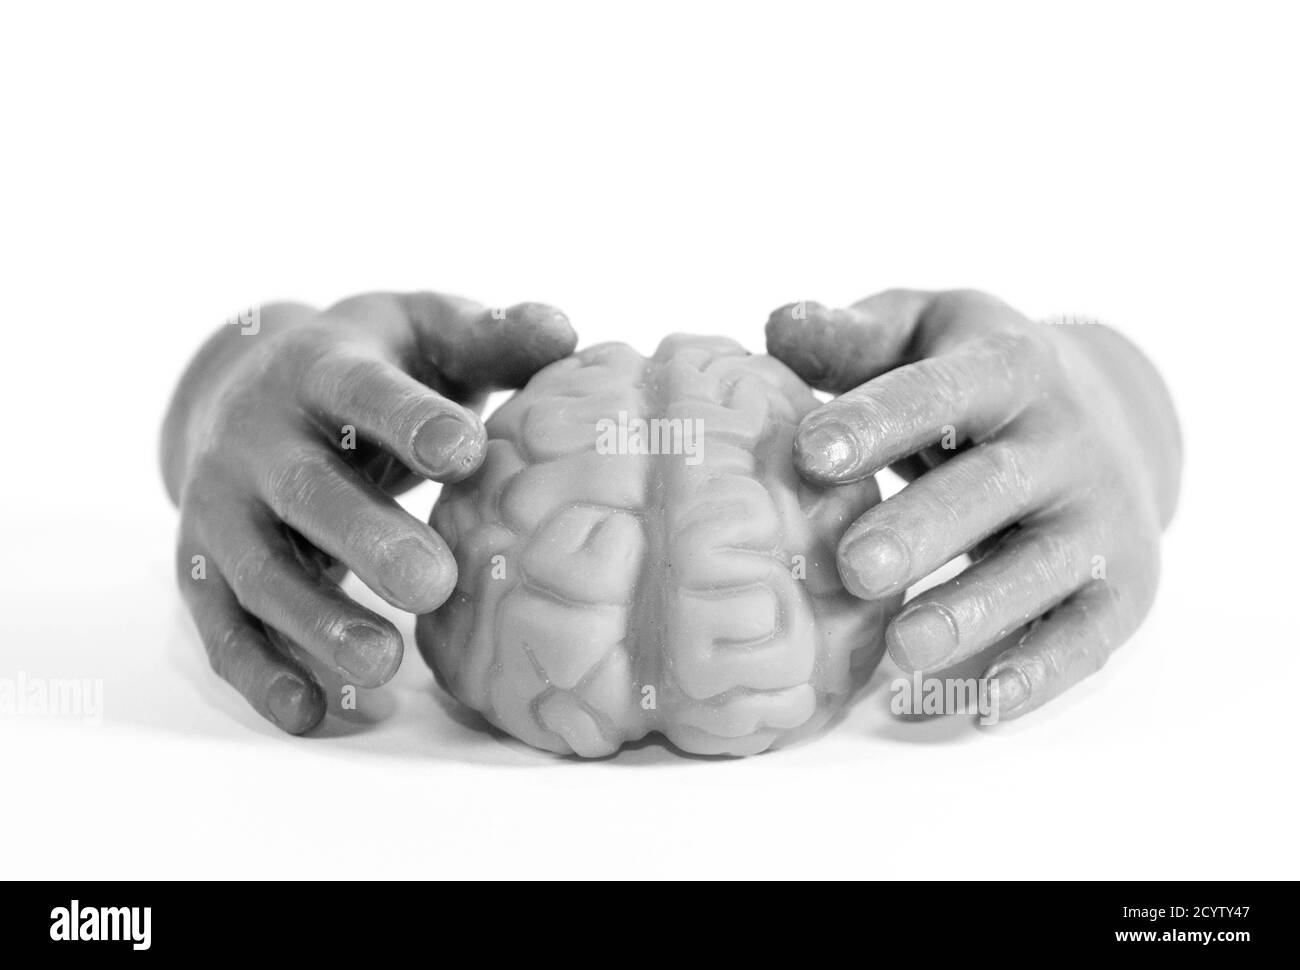 Menschliche Hände, die ein menschliches Gehirn halten, in Schwarz und Weiß dargestellt. Stockfoto